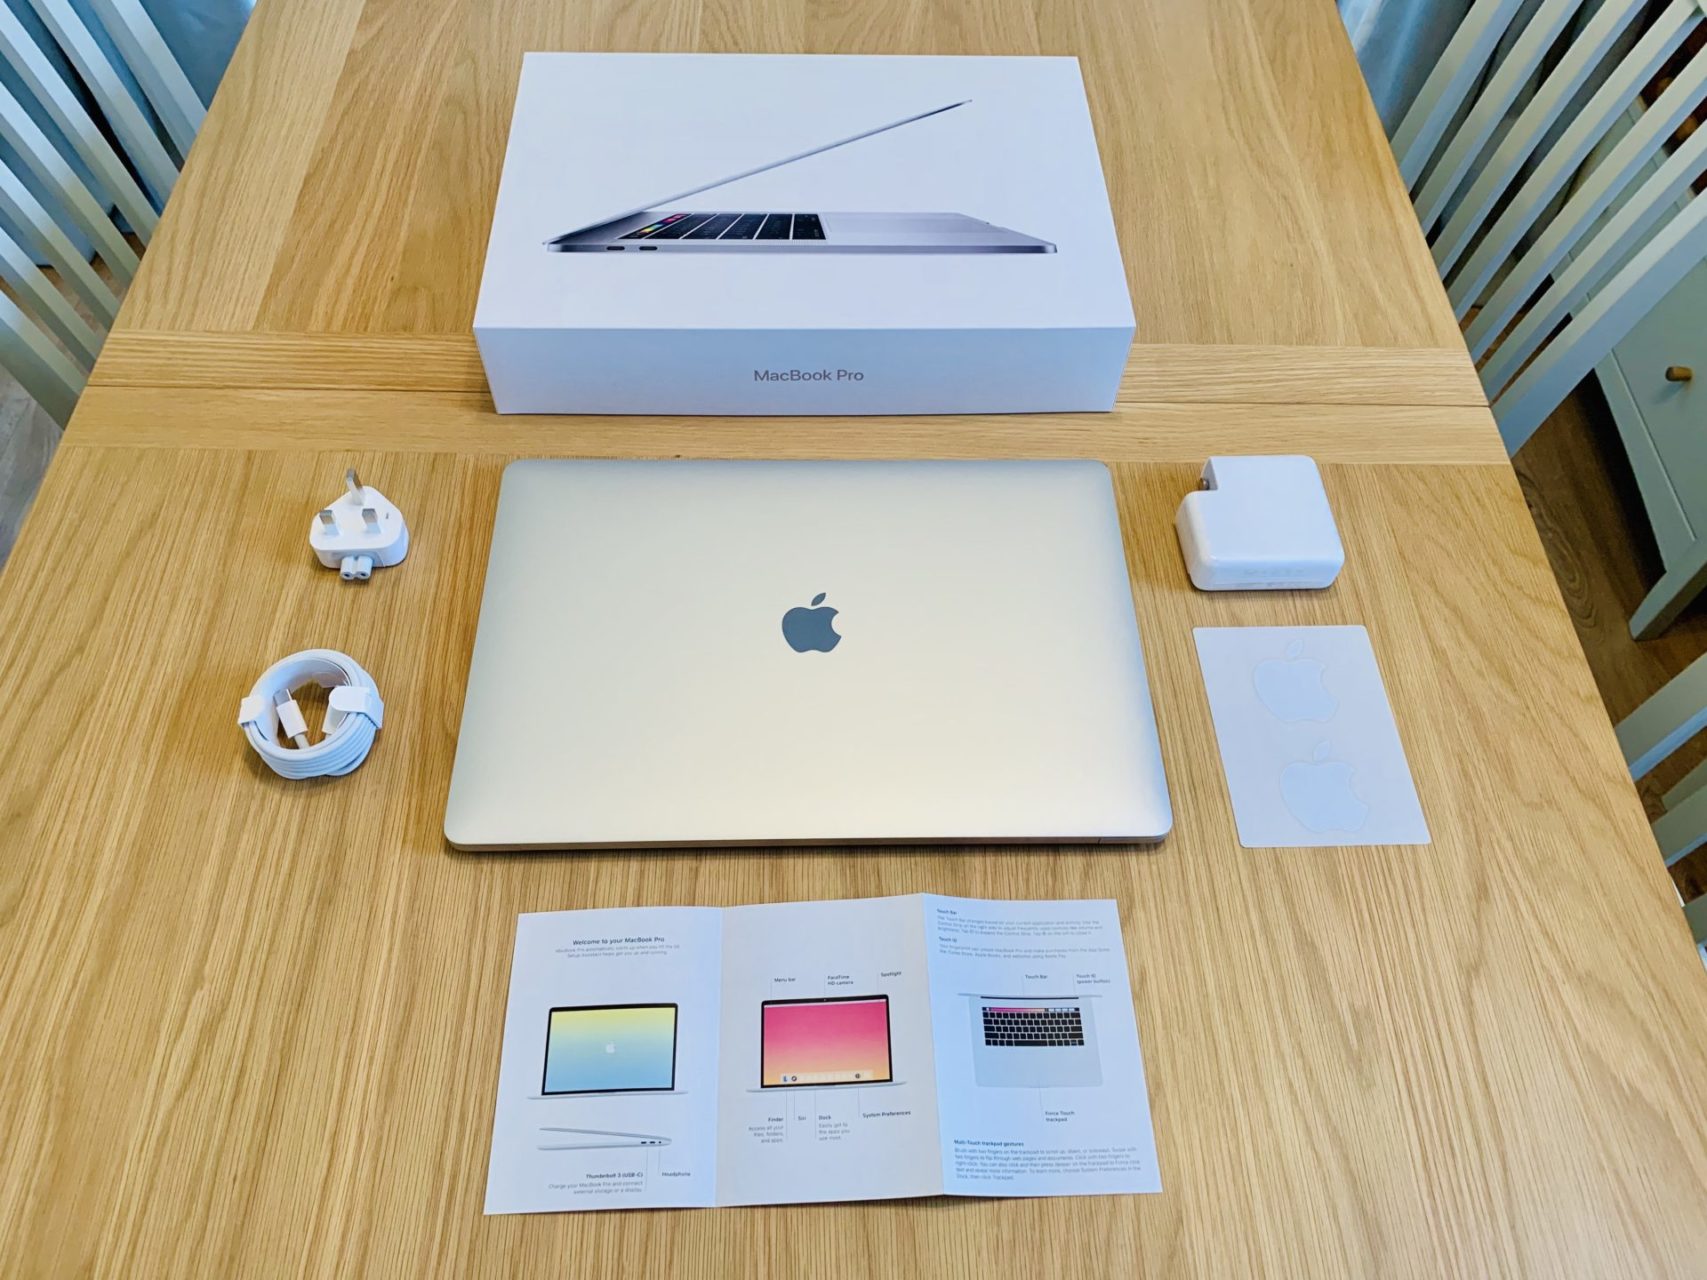 Apple MacBook Pro 15 inch unboxing